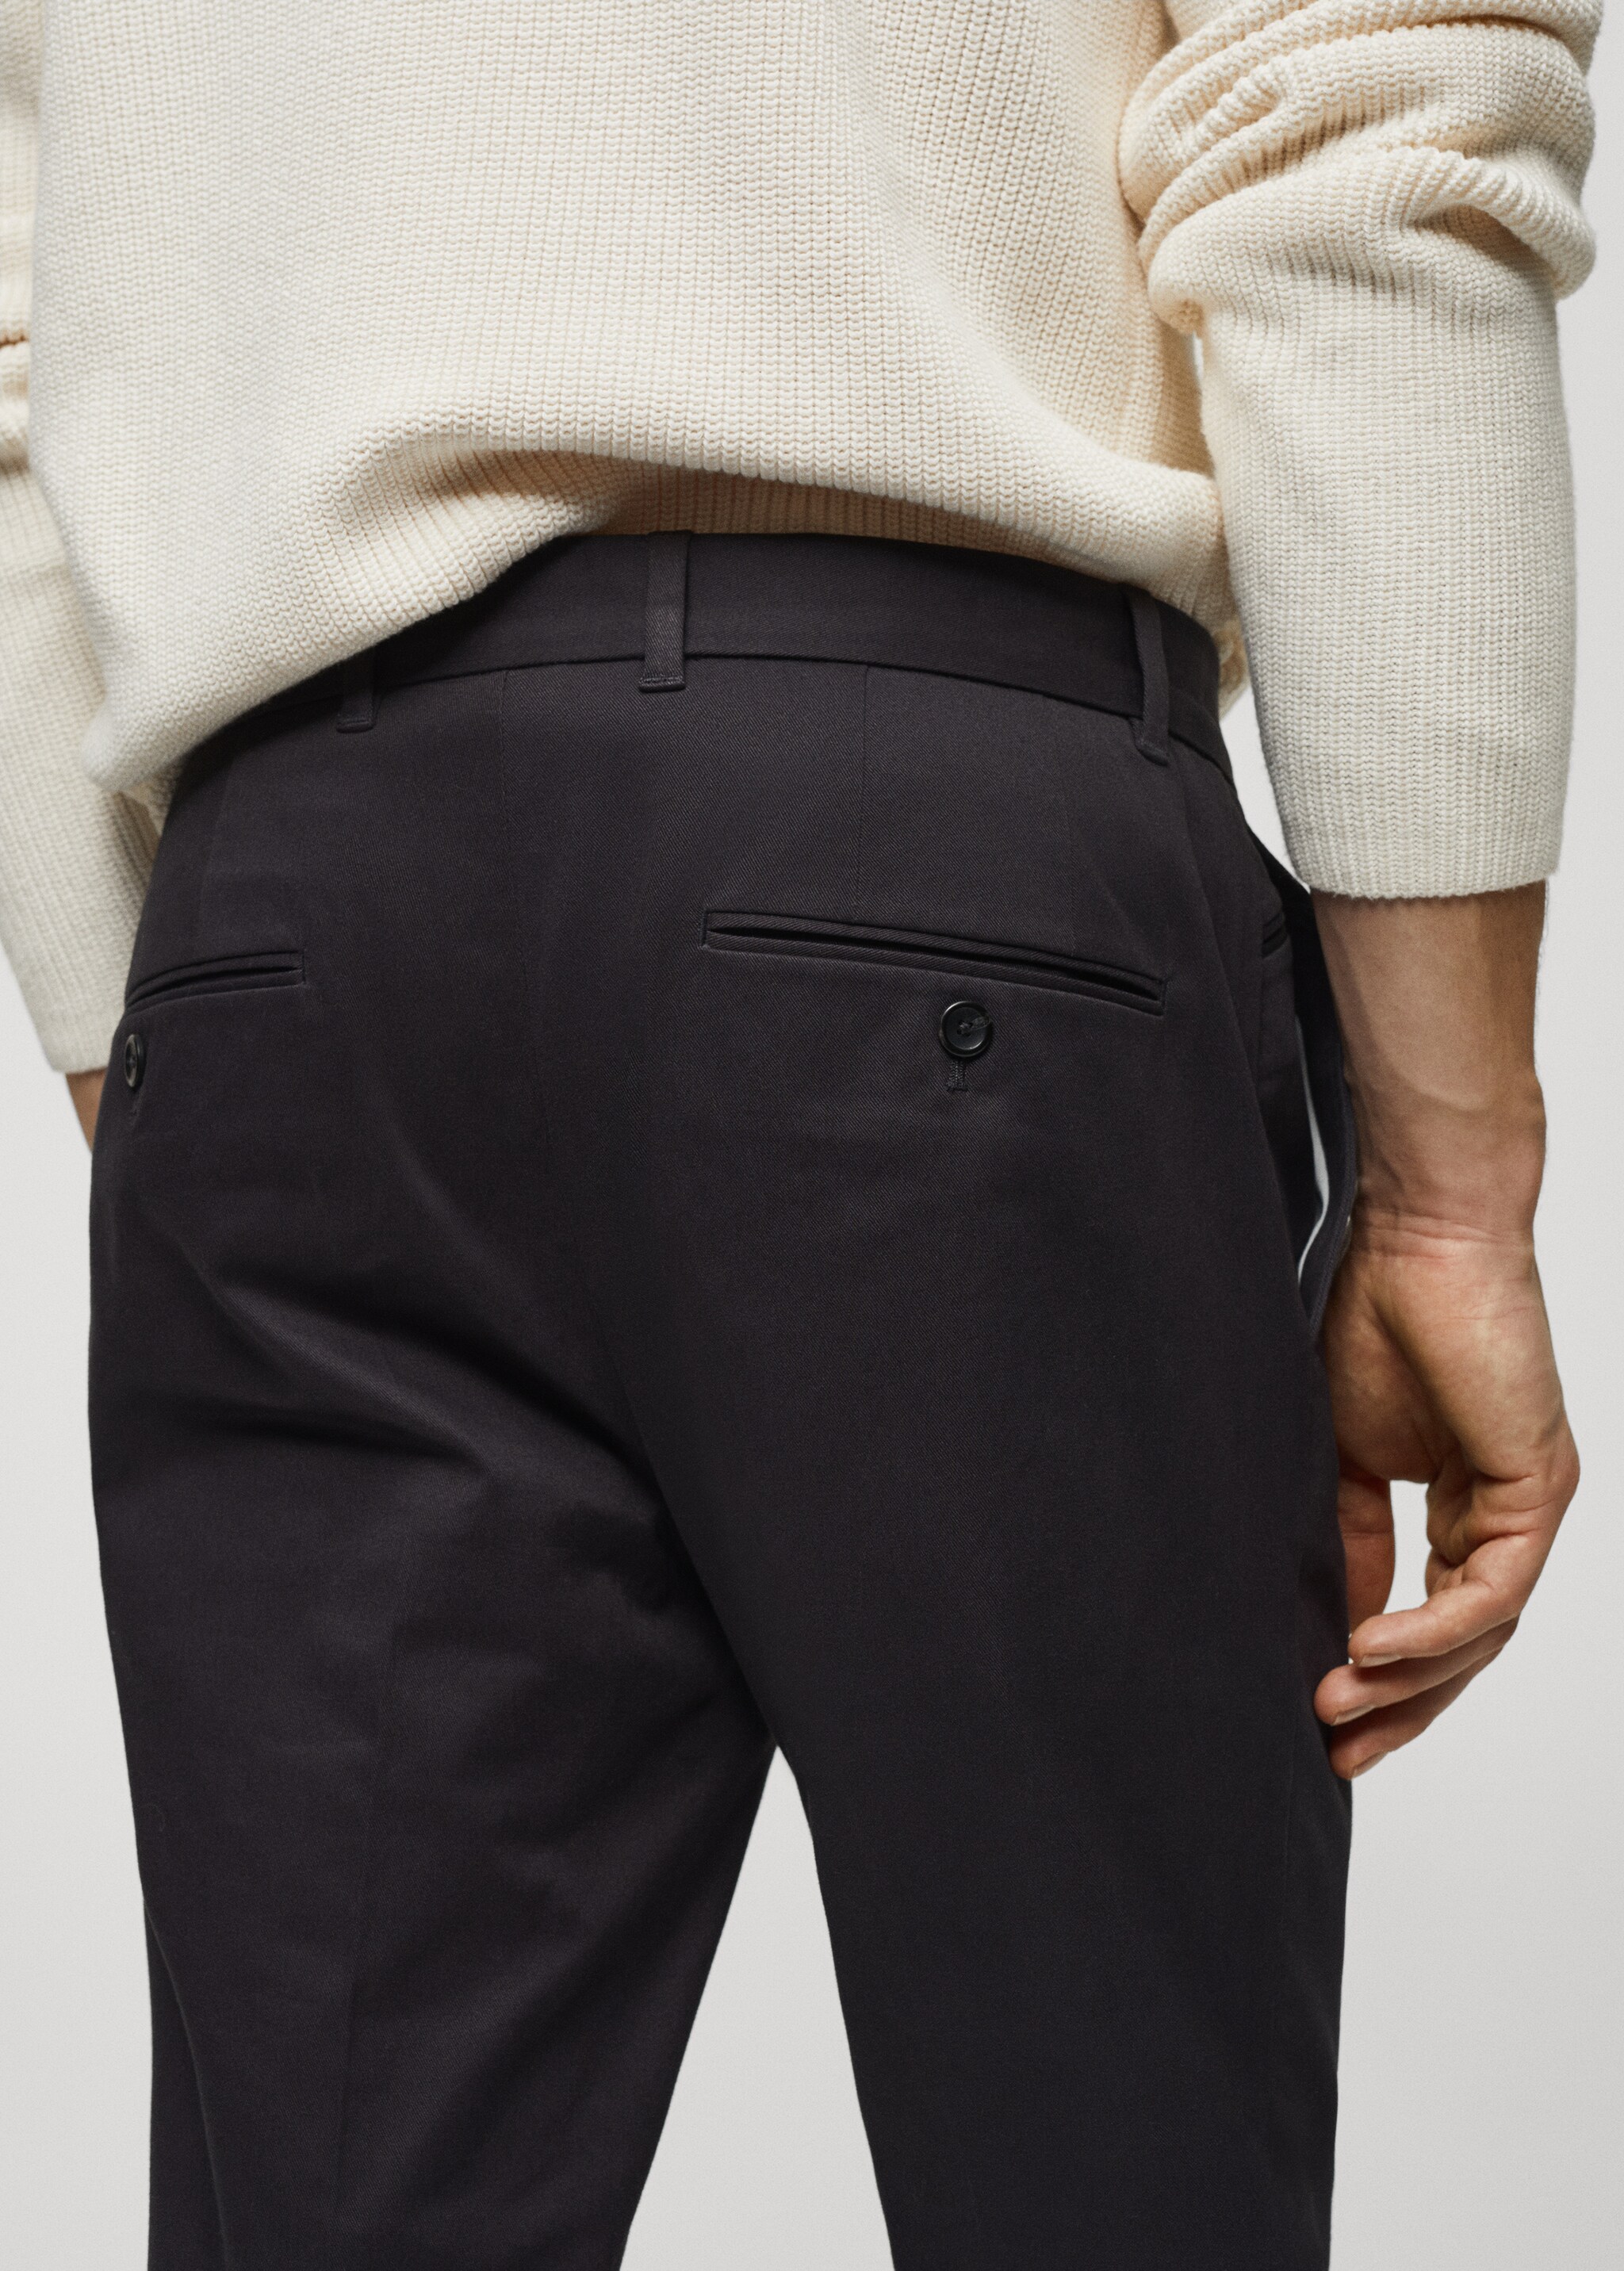 Pantalón algodón slim fit pinzas - Detalle del artículo 4